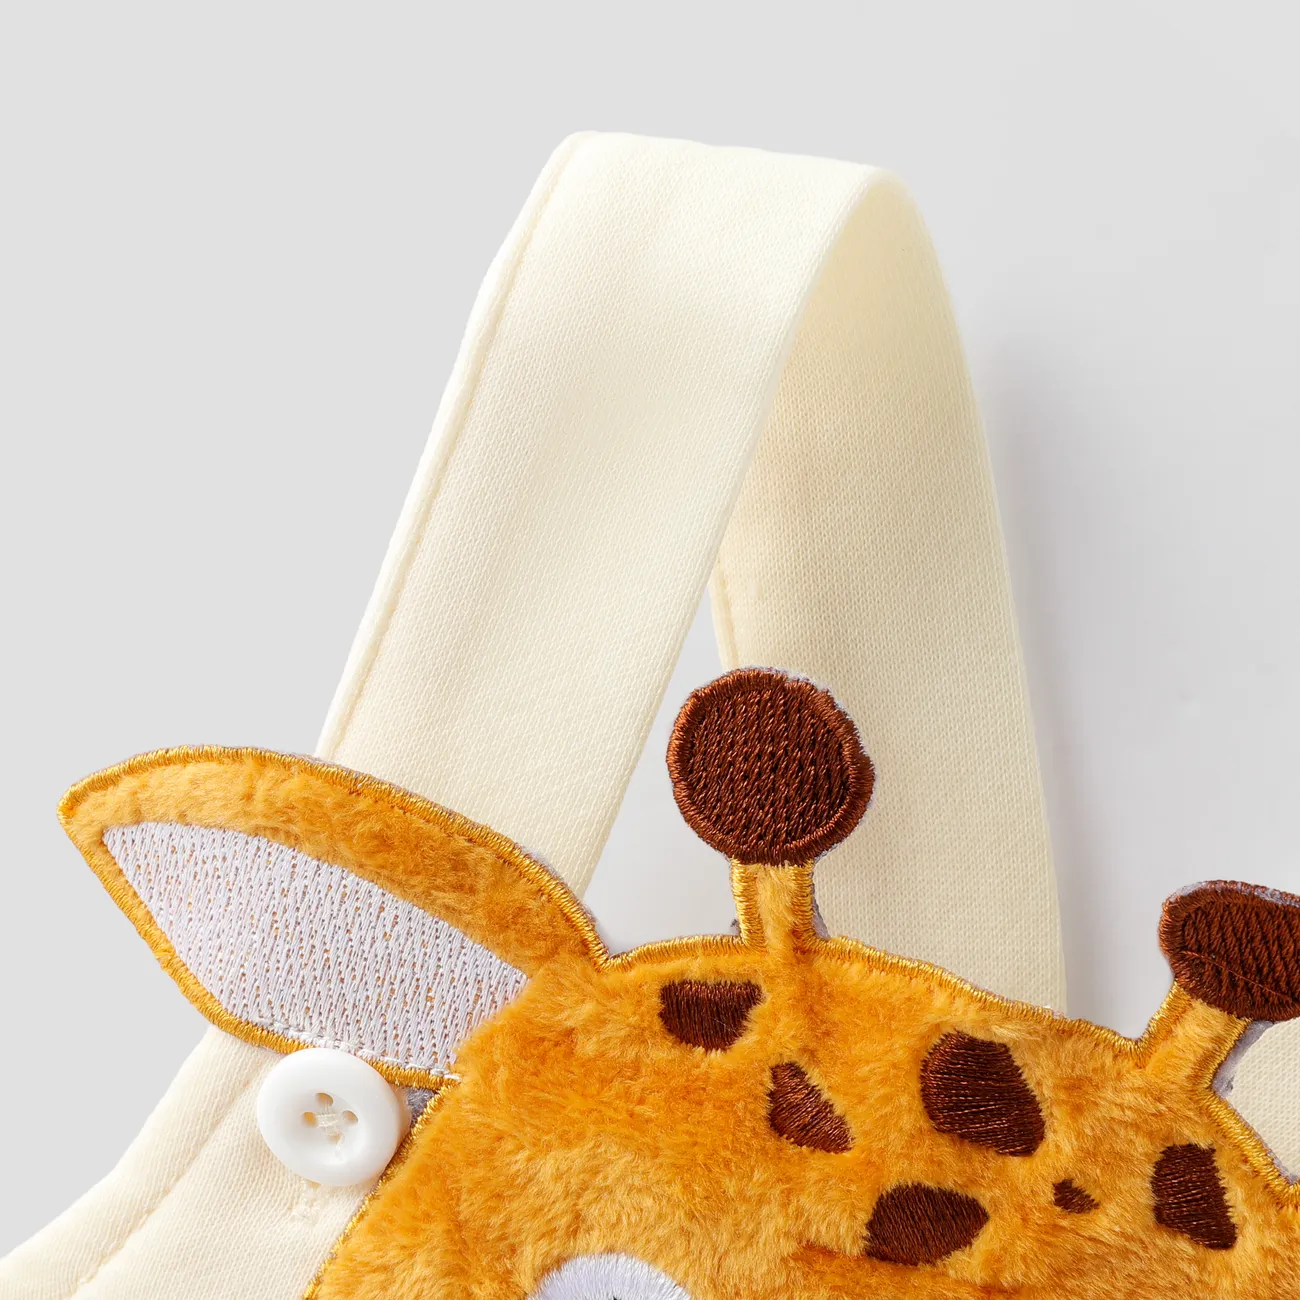 Baby Boy/Girl 2pcs Giraffe Embroidery Jumpsuit and Bib Set LightApricot big image 1